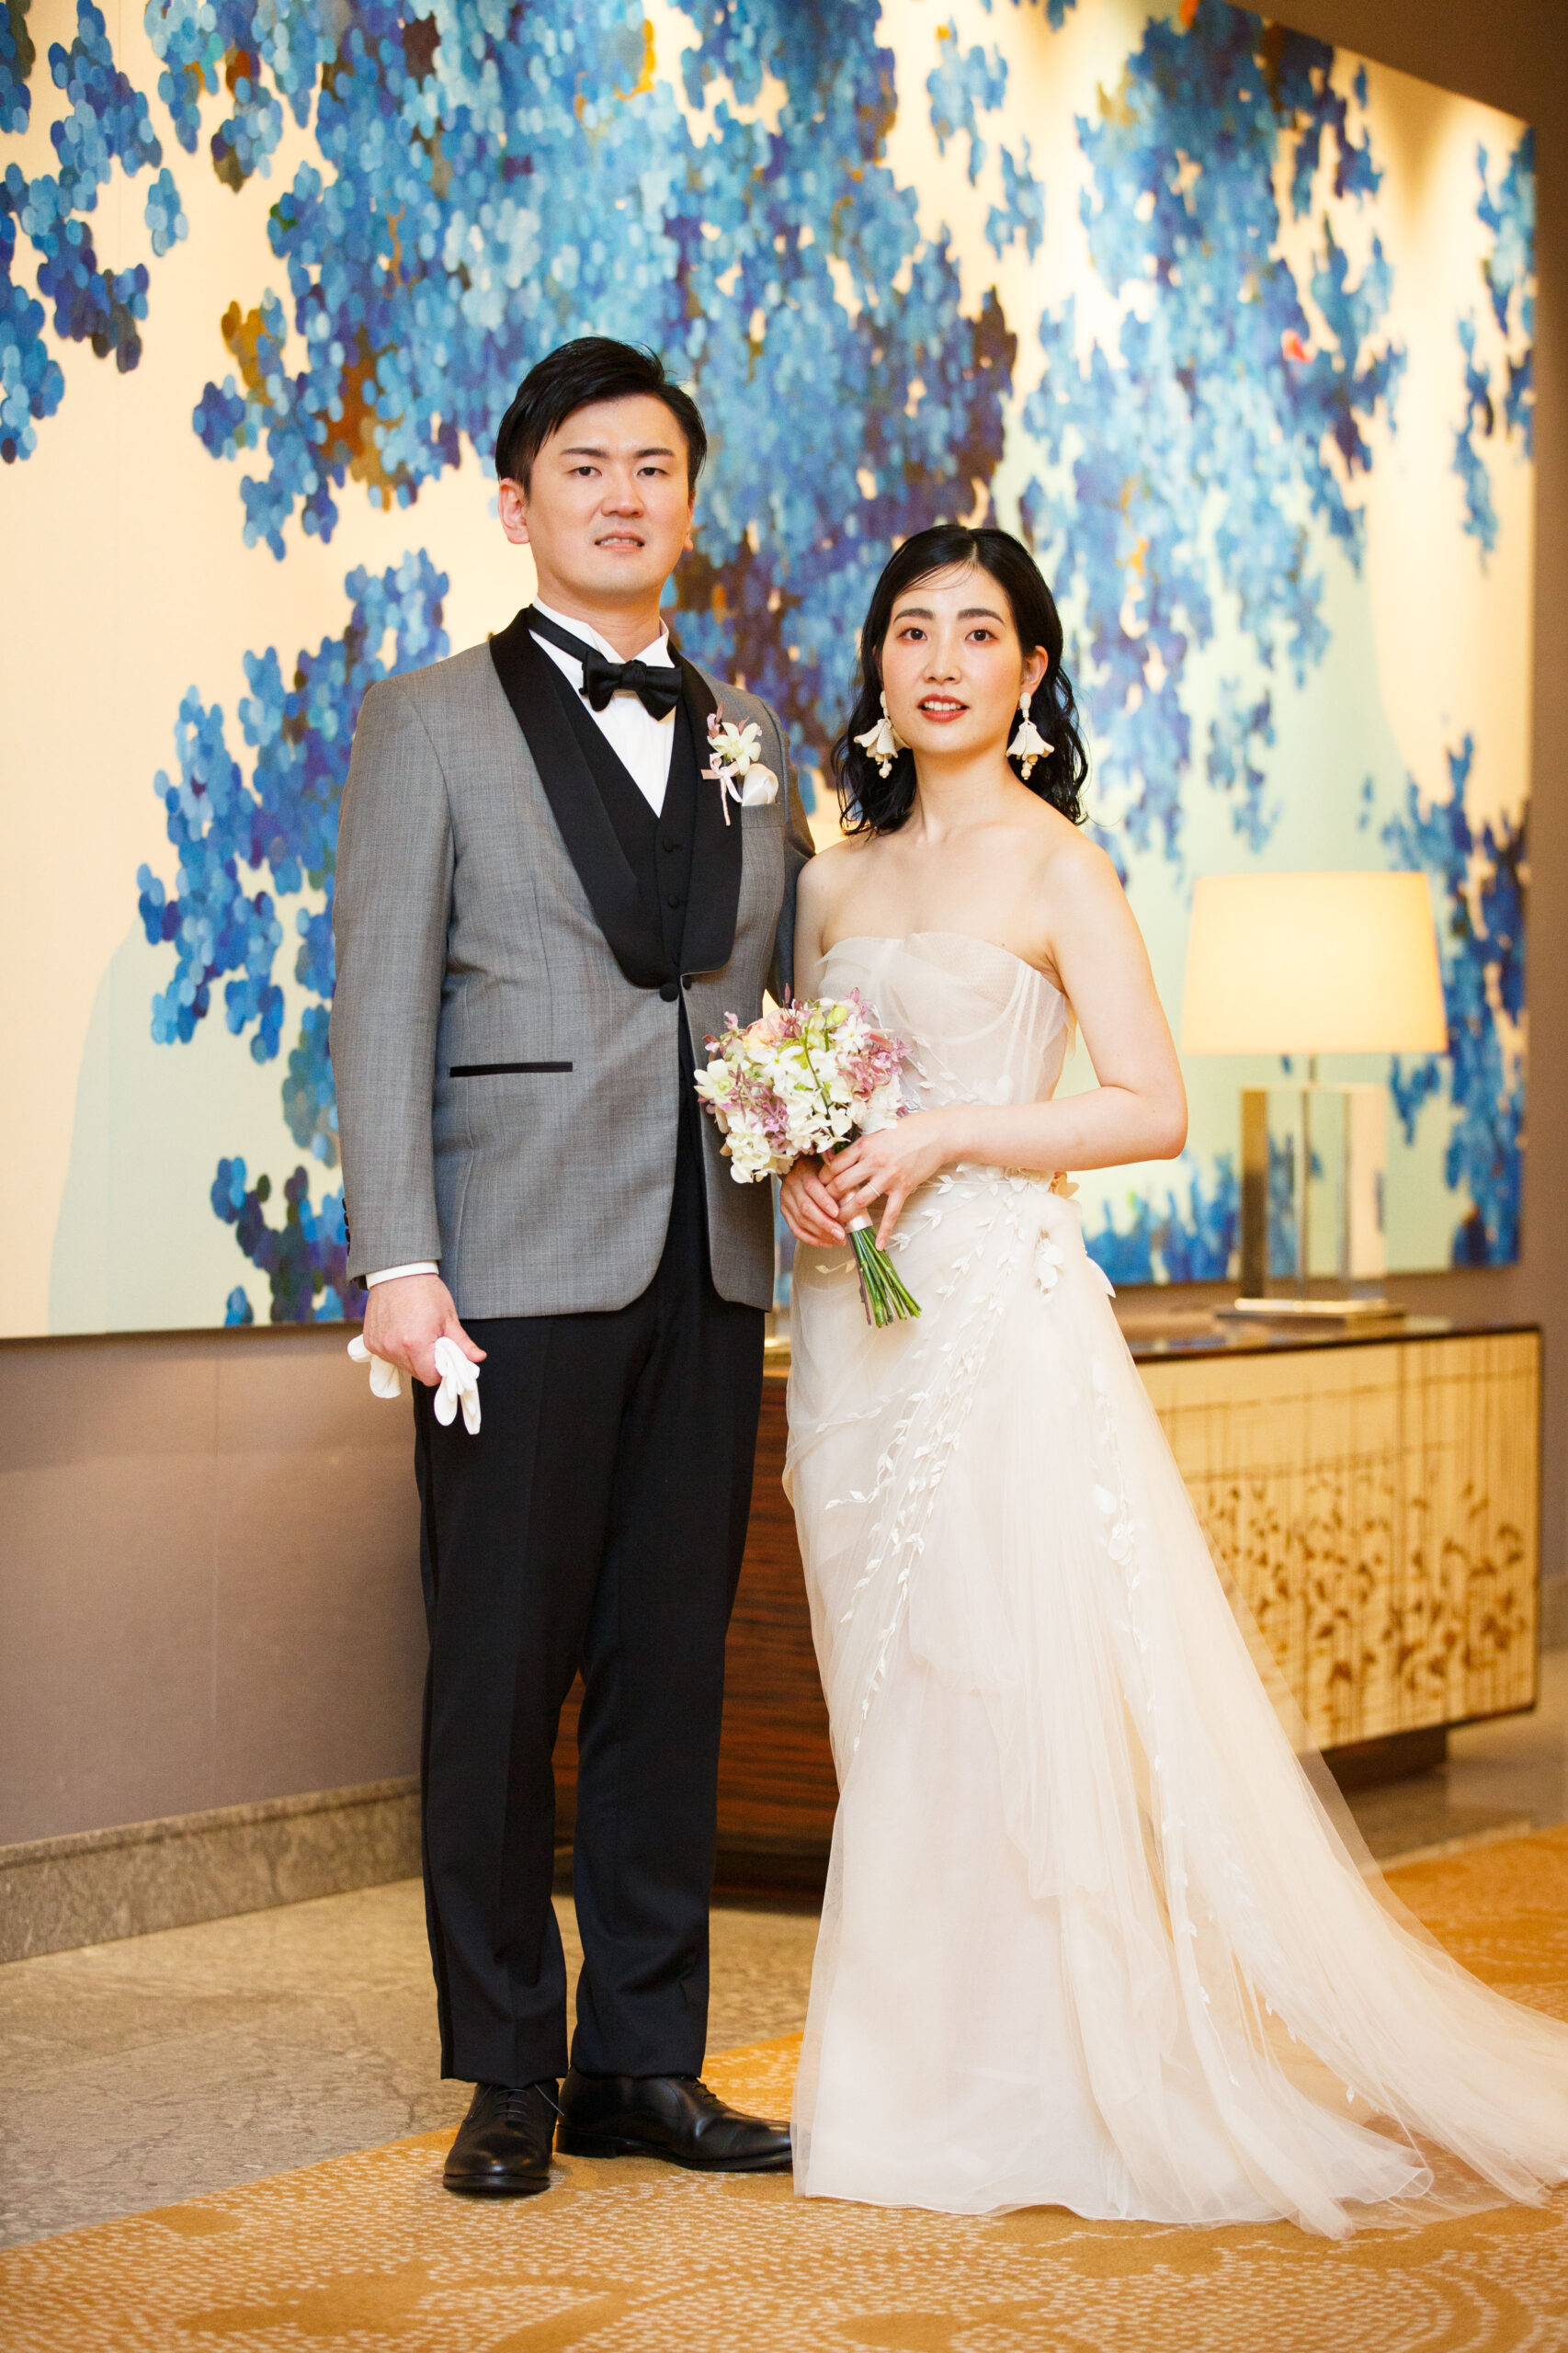 ザトリートドレッシングの提携会場、パレスホテル東京で結婚式を迎えたご新郎ご新婦様のご紹介